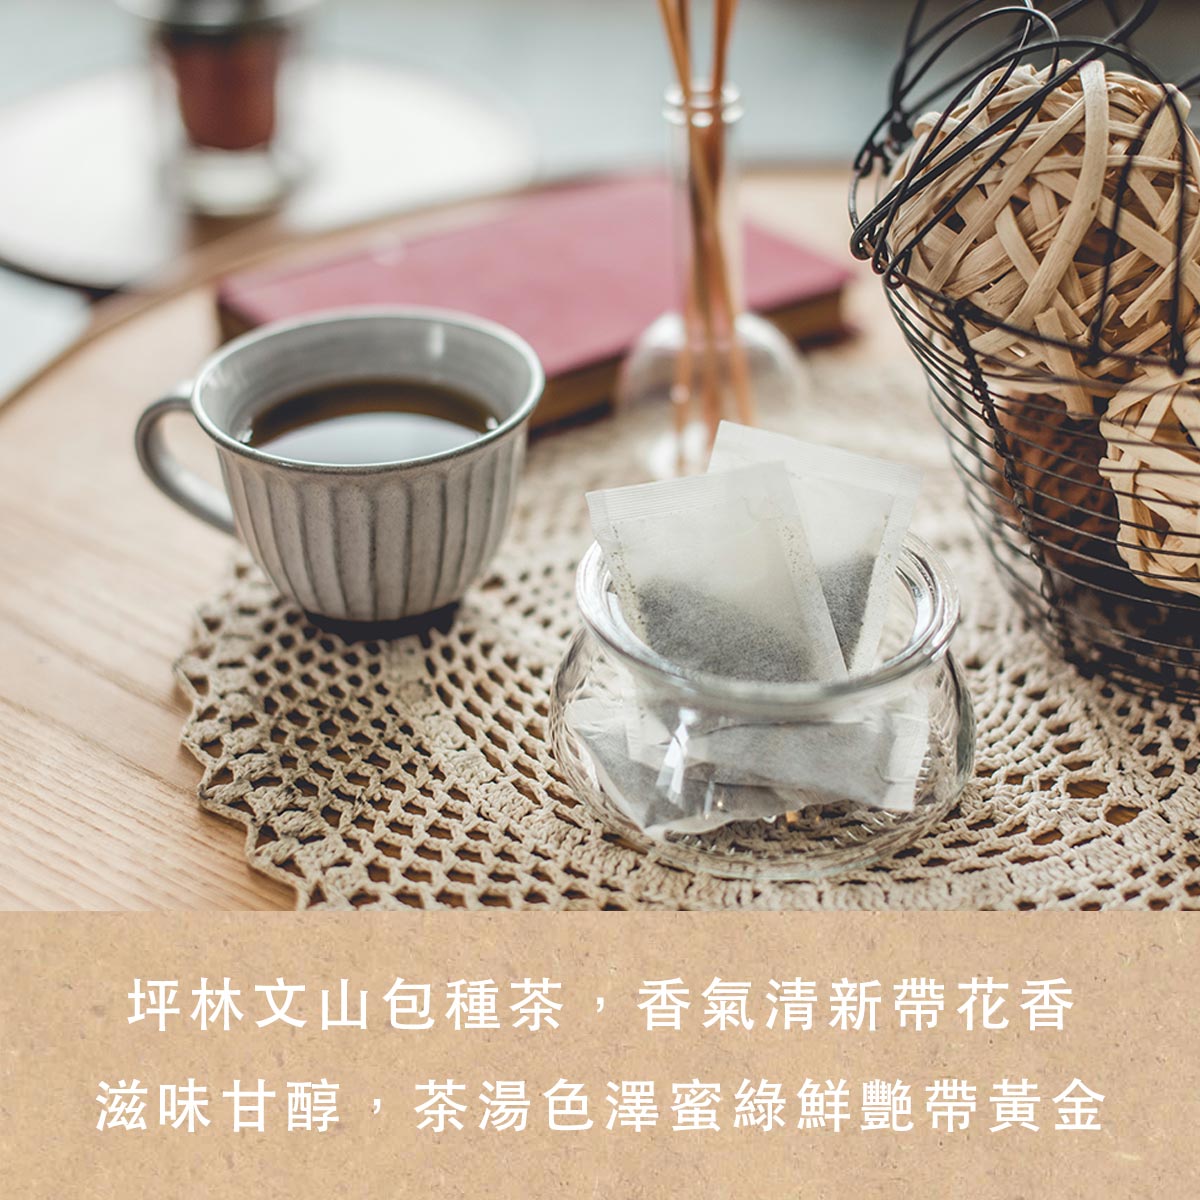 香港人來台灣必買的台灣特色手信推薦人氣包種茶包